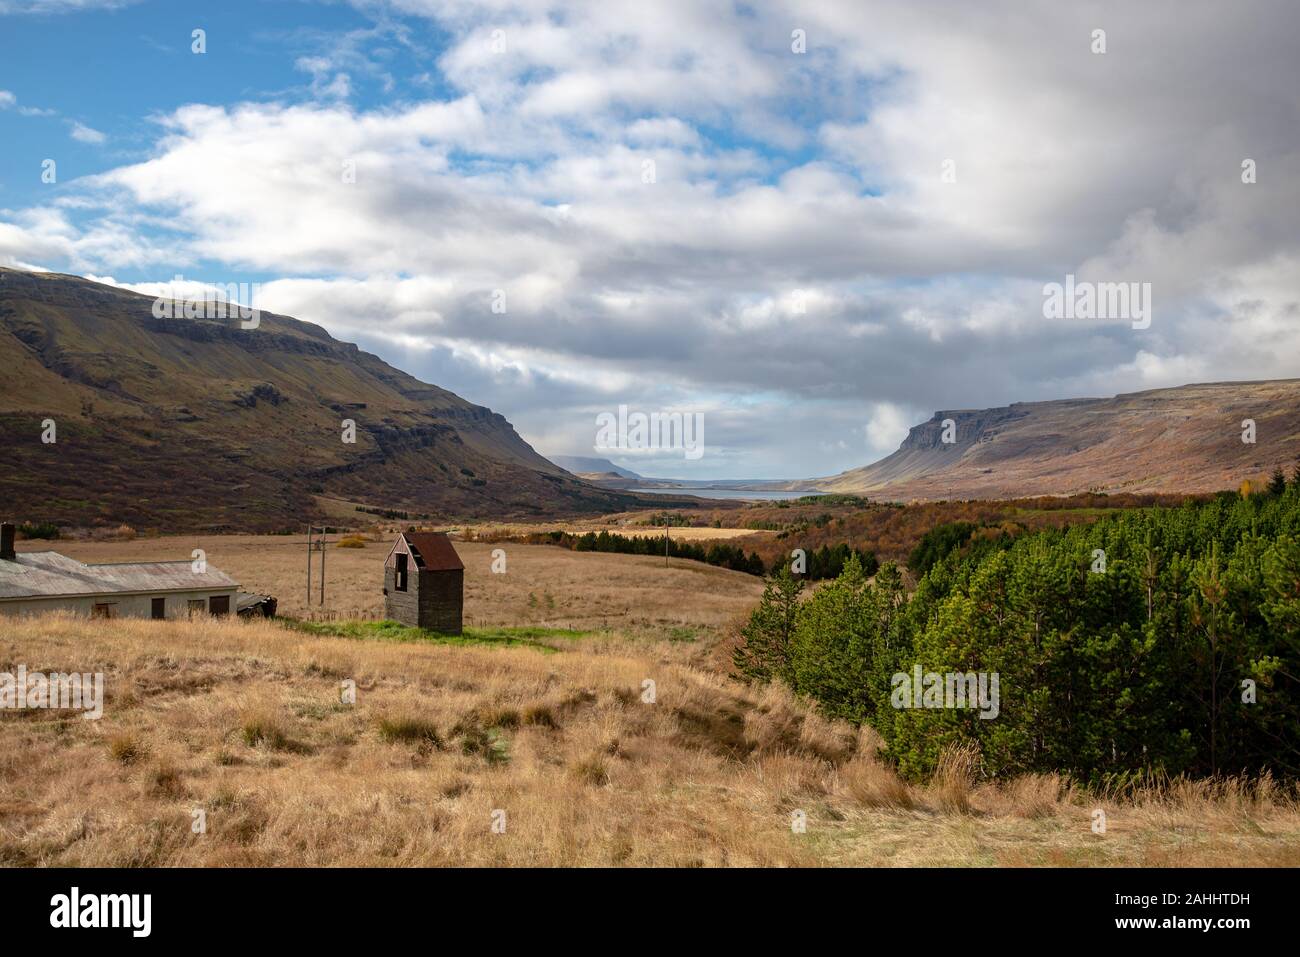 Typisch isländischen Landschaft mit kleinen hölzernen Scheune, mit keine Menschen, mit teilweise bedecktem Himmel Anfang Oktober getroffen, Island Stockfoto